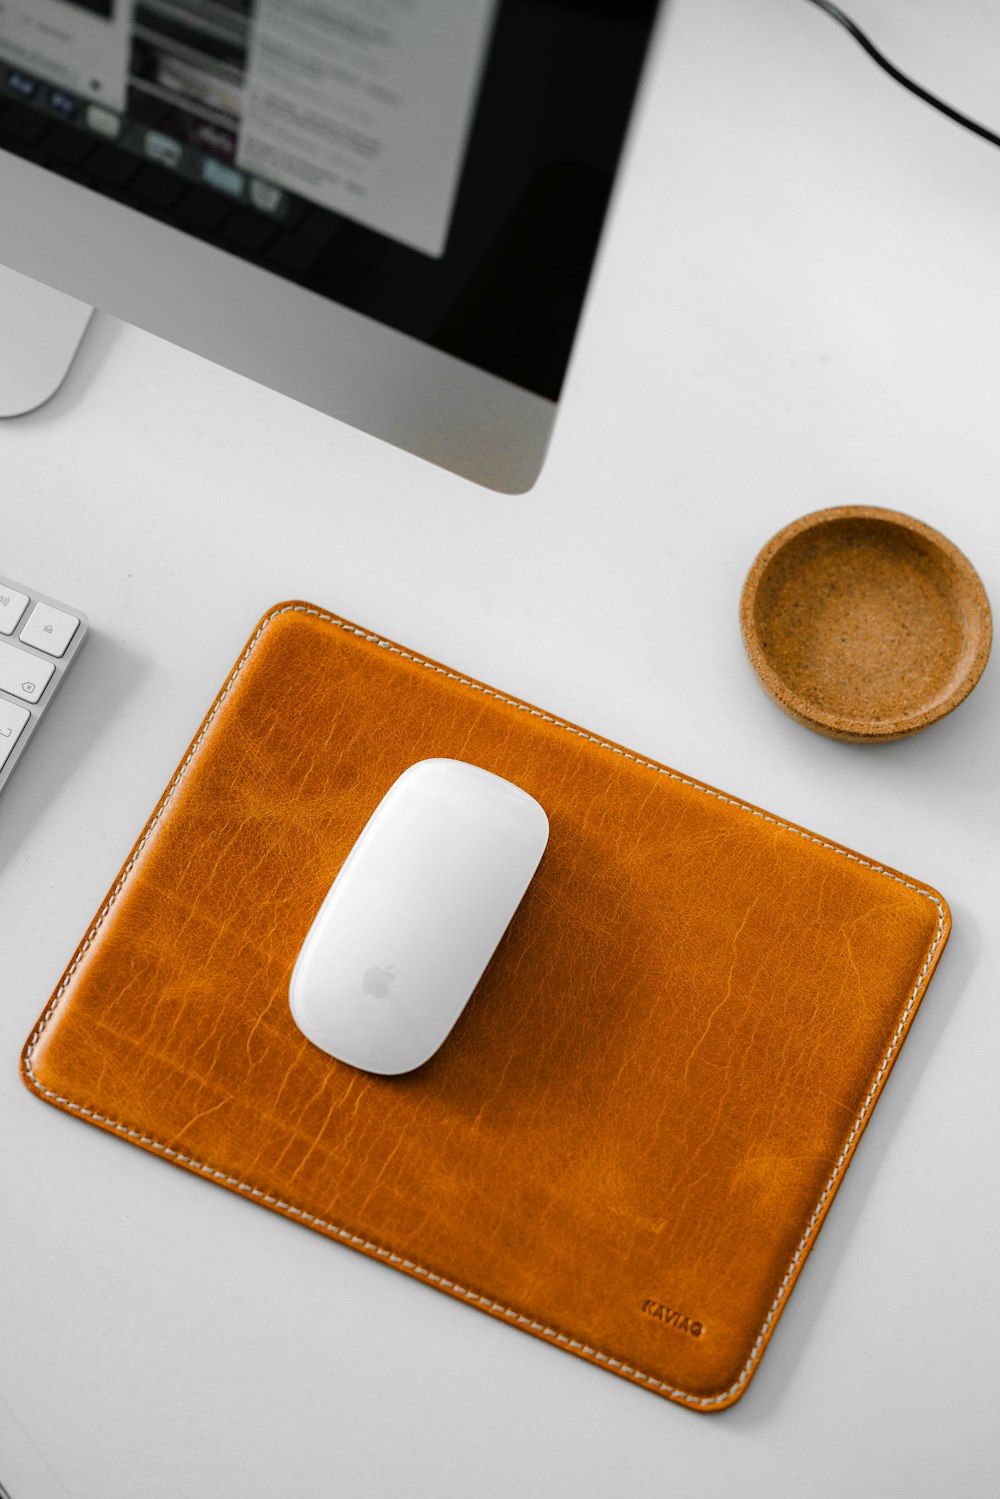 um mouse de computador e uma almofada de couro em uma mesa